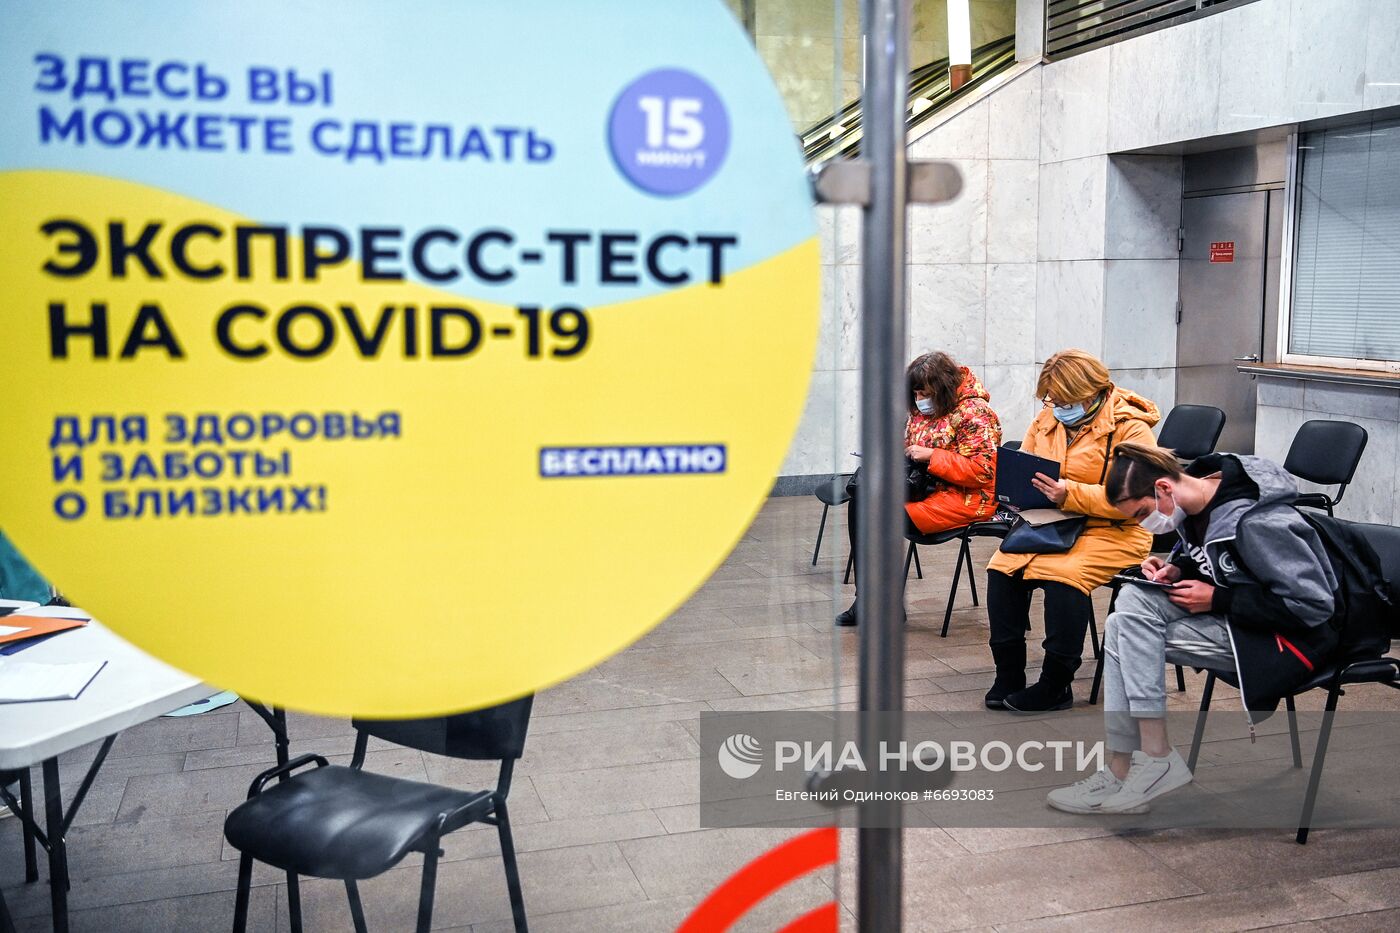 Экспресс-тестирование на COVID-19 в московском метро